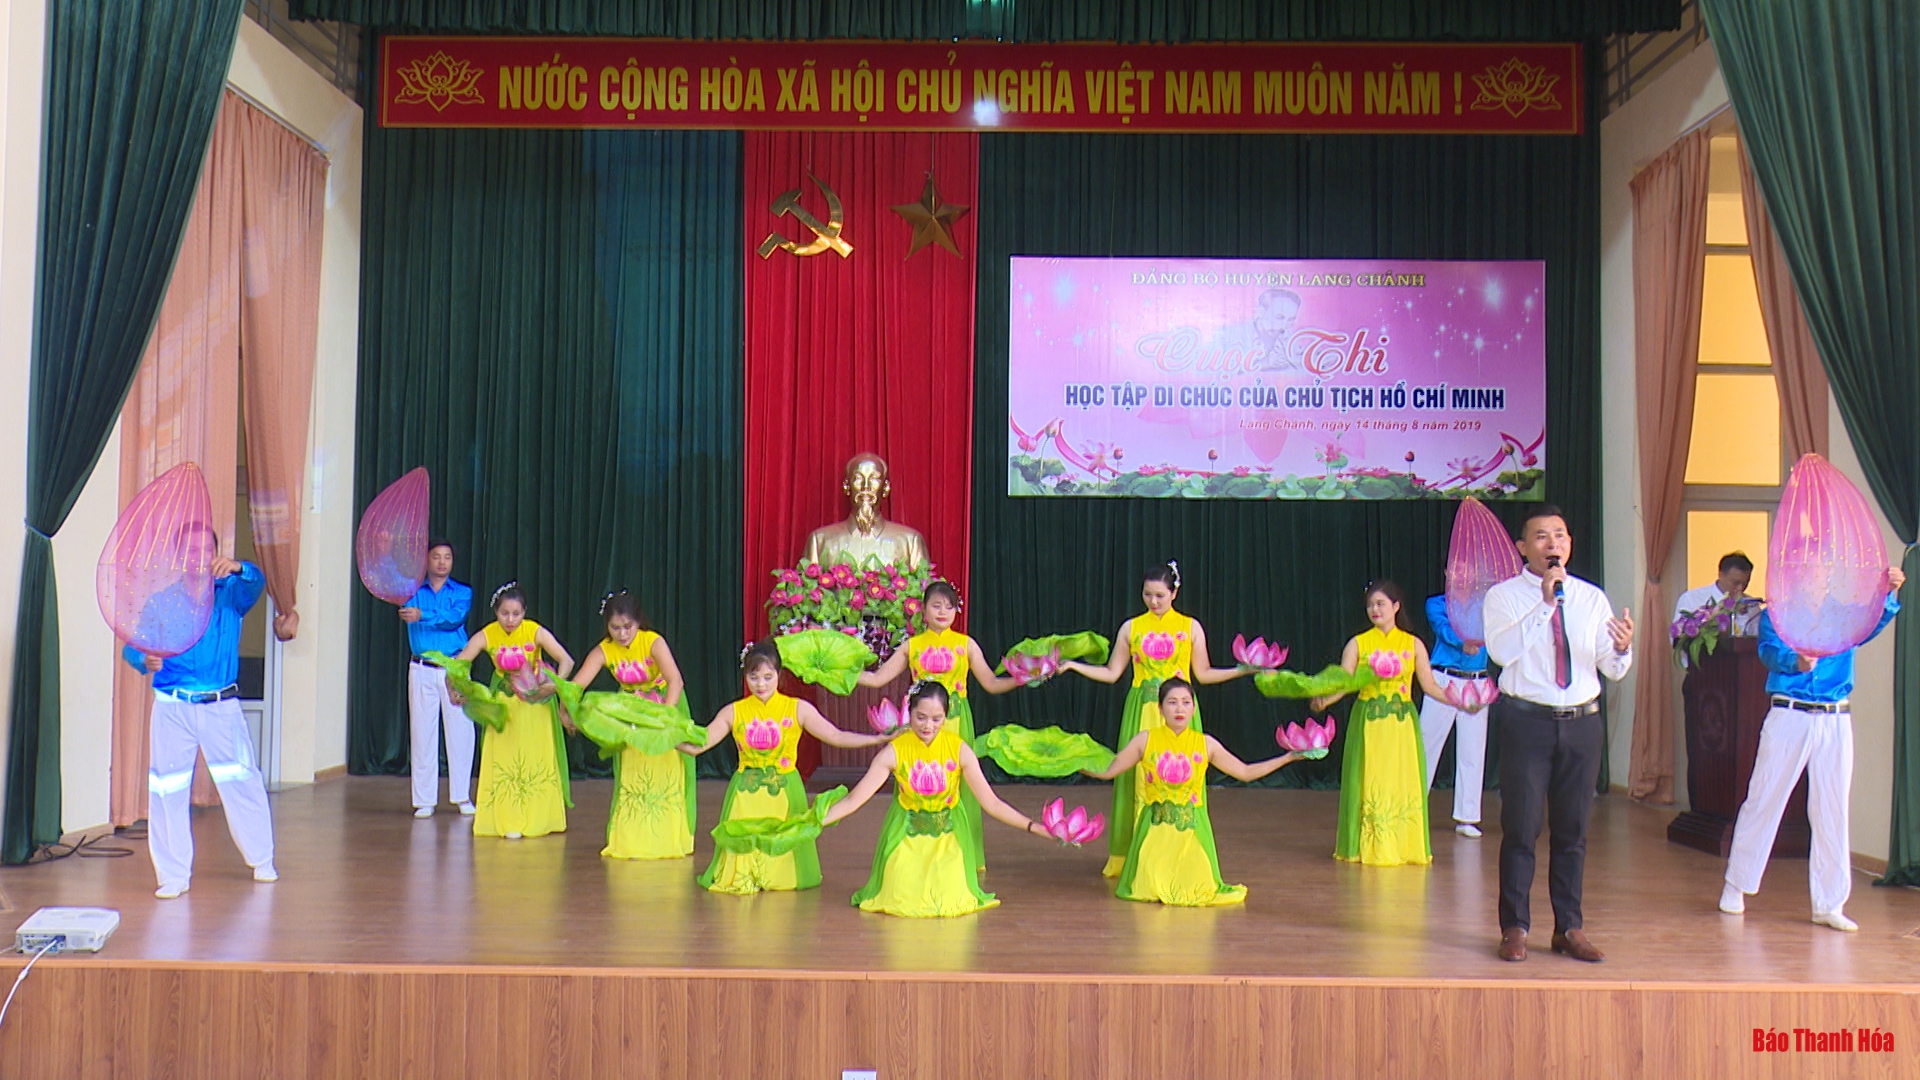 Huyện Lang Chánh tổ chức cuộc thi “Học tập Di chúc của Chủ tịch Hồ Chí Minh” năm 2019